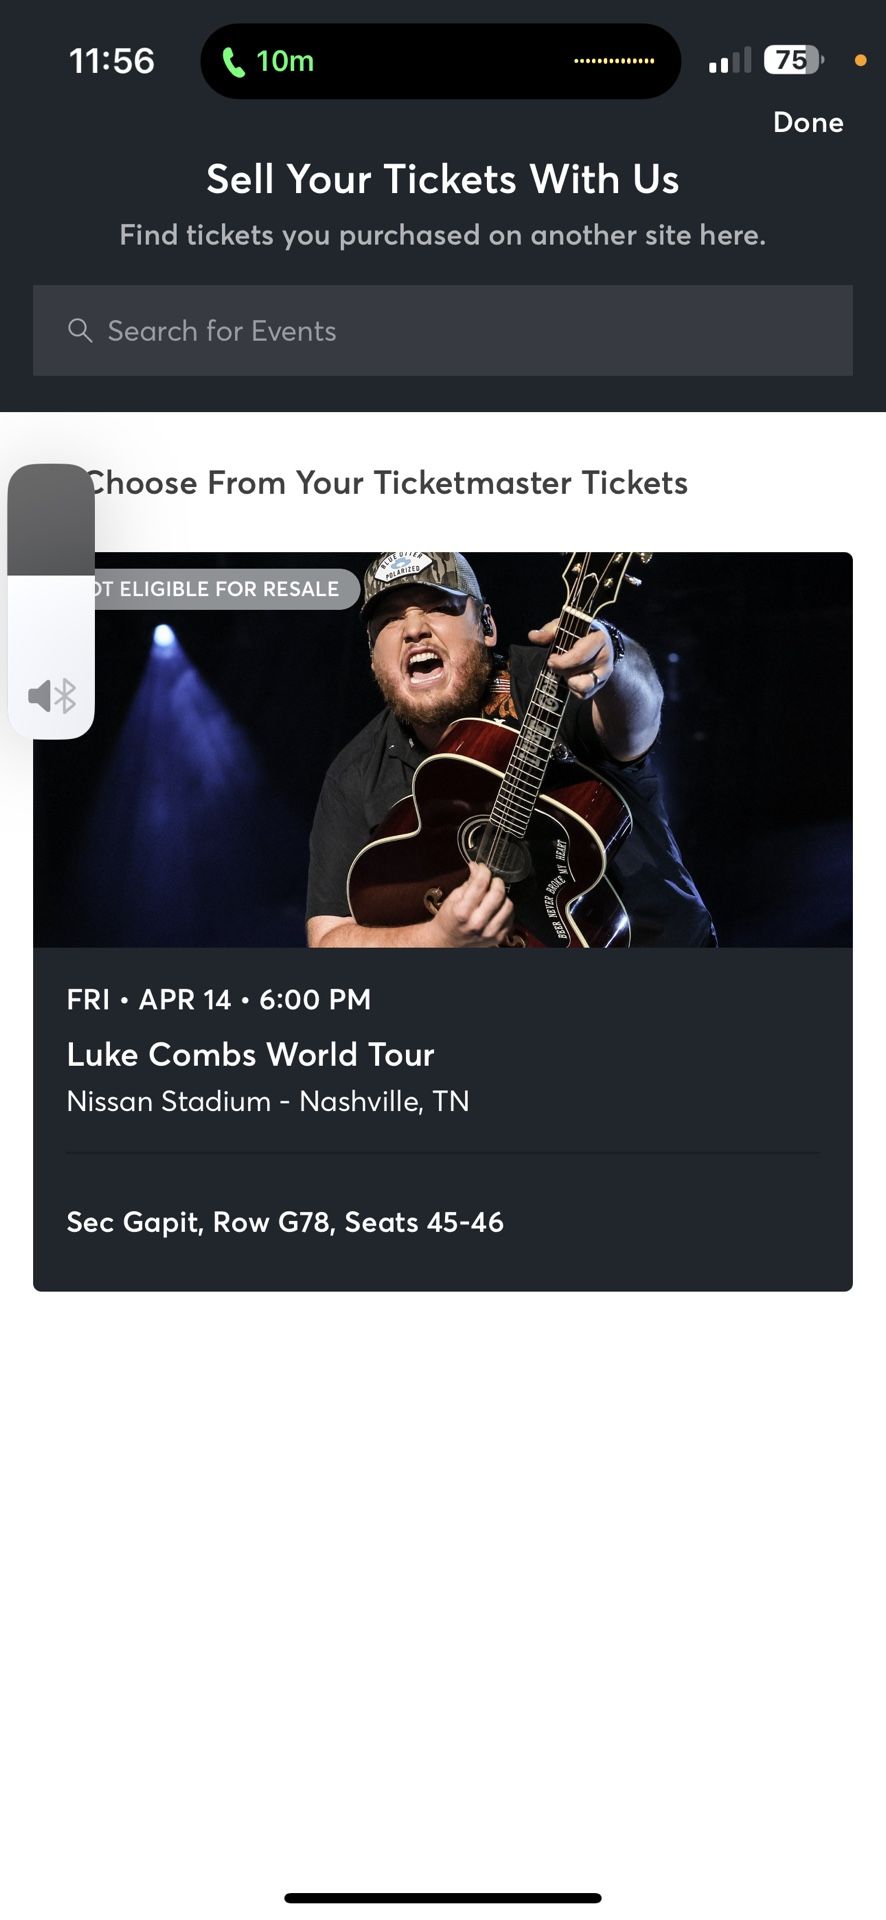 Luke Combs Concert Ticket 